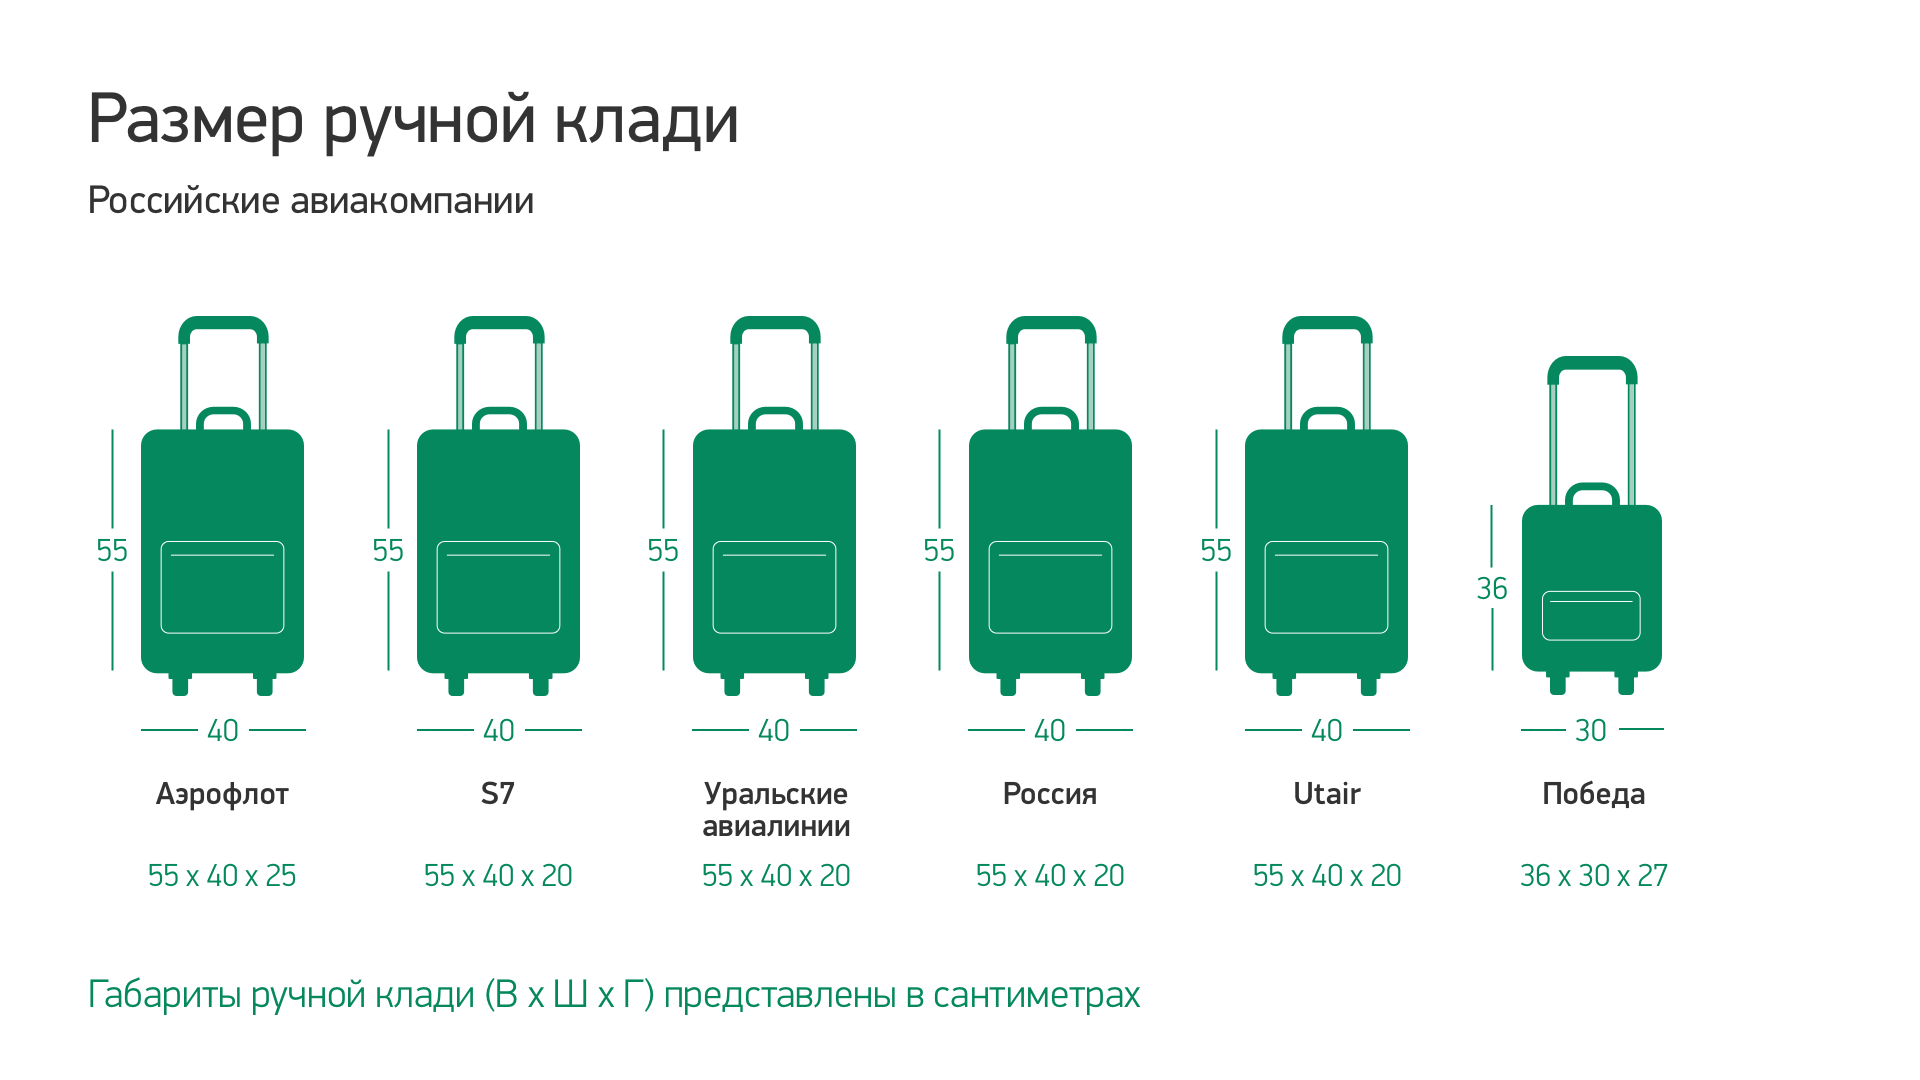 Правила перевозки багажа и ручной клади в турецких авиалиниях (turkish airlines)